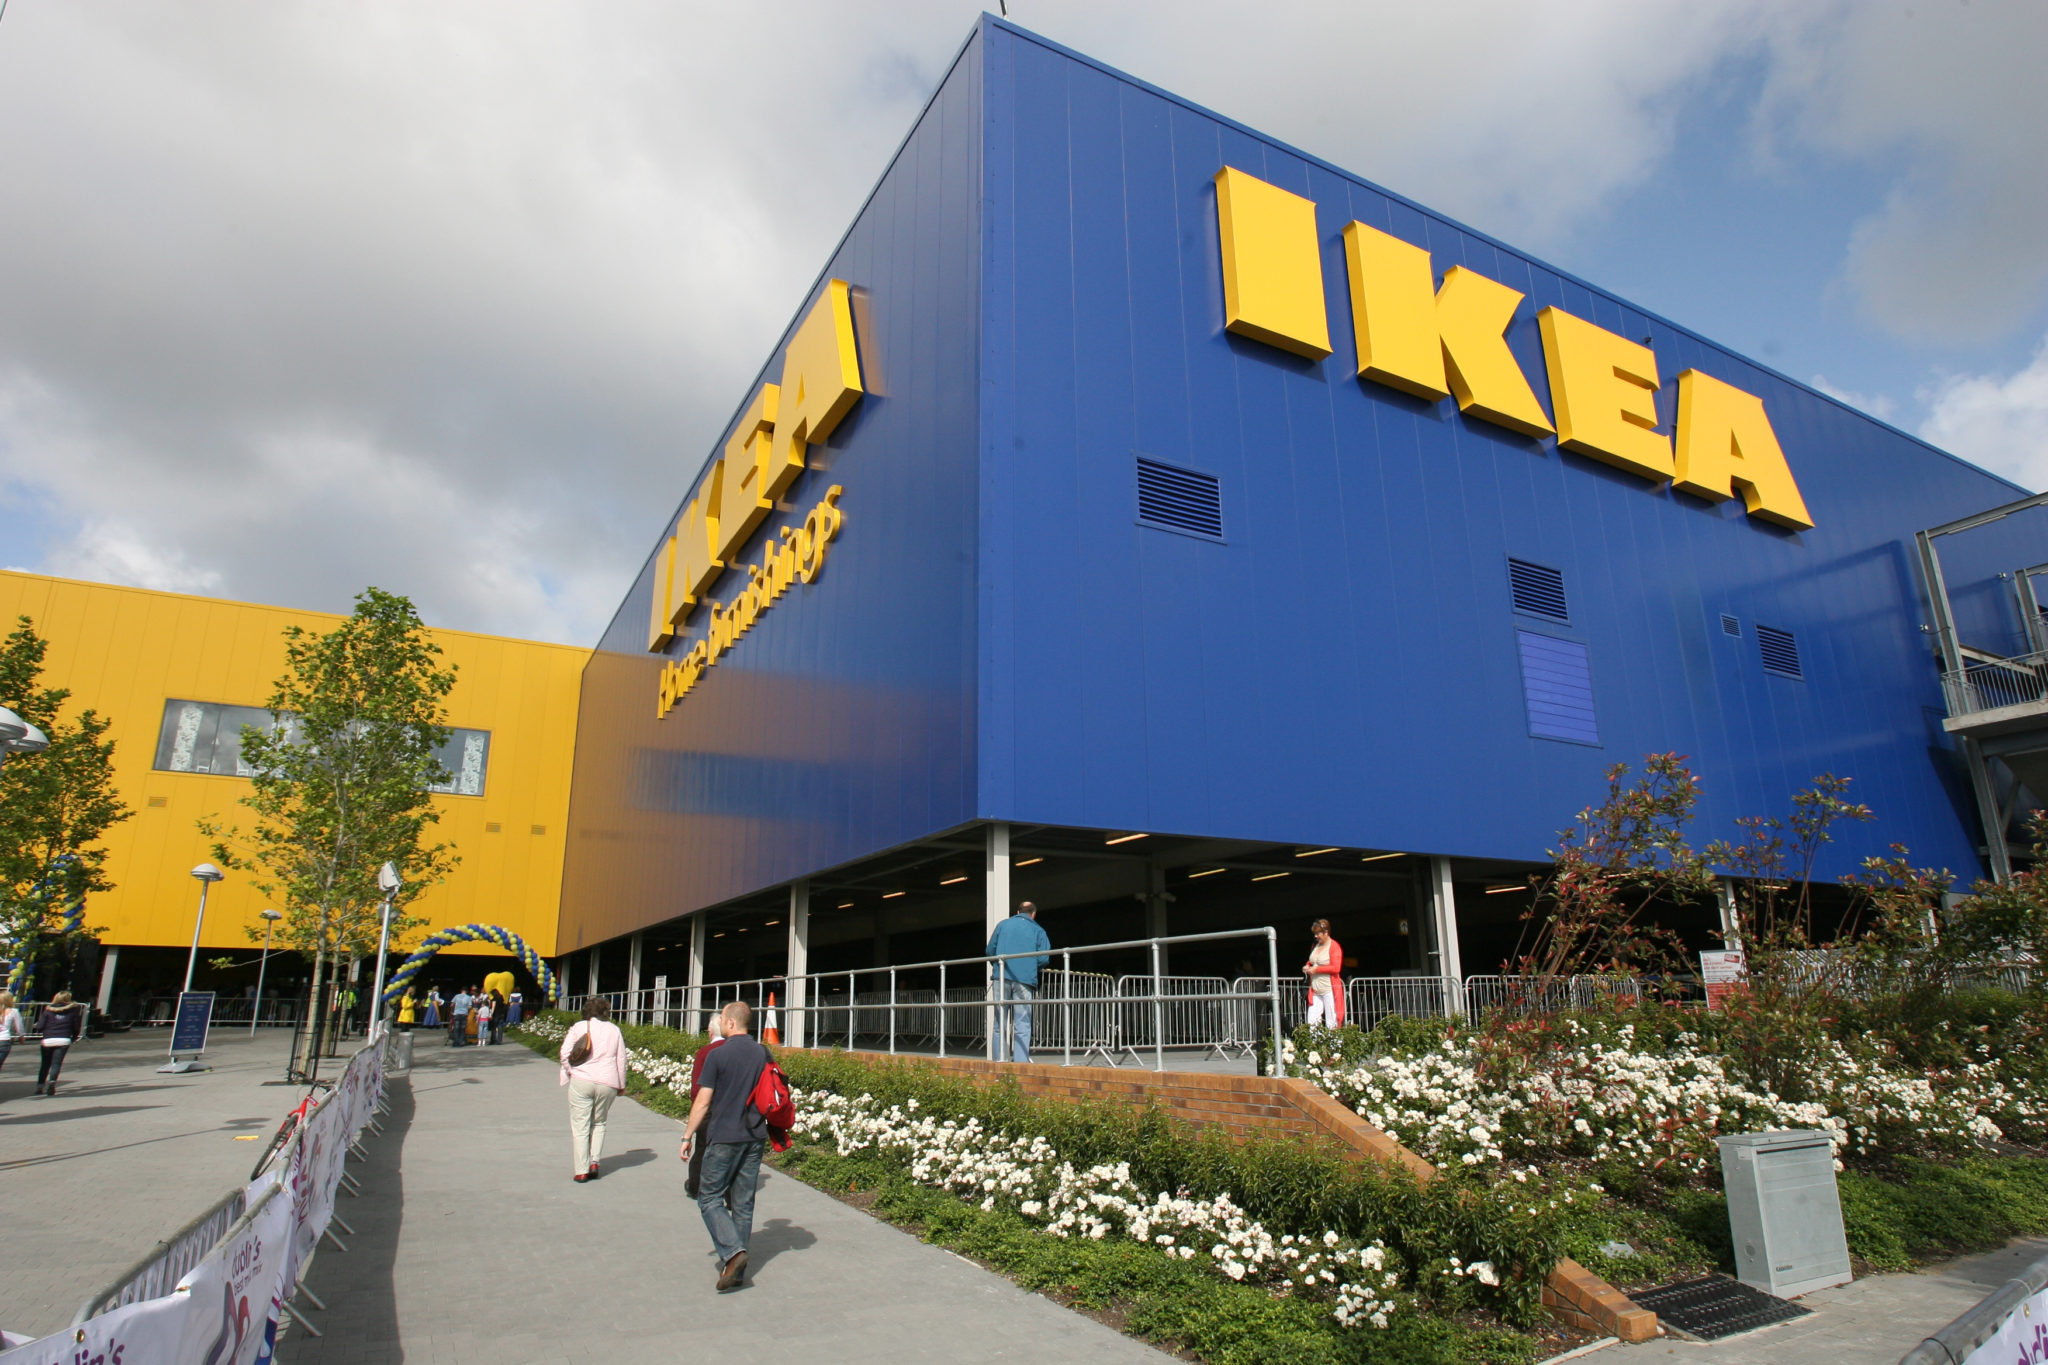 Dublin's Ikea store in Ballymun is seen in 2009